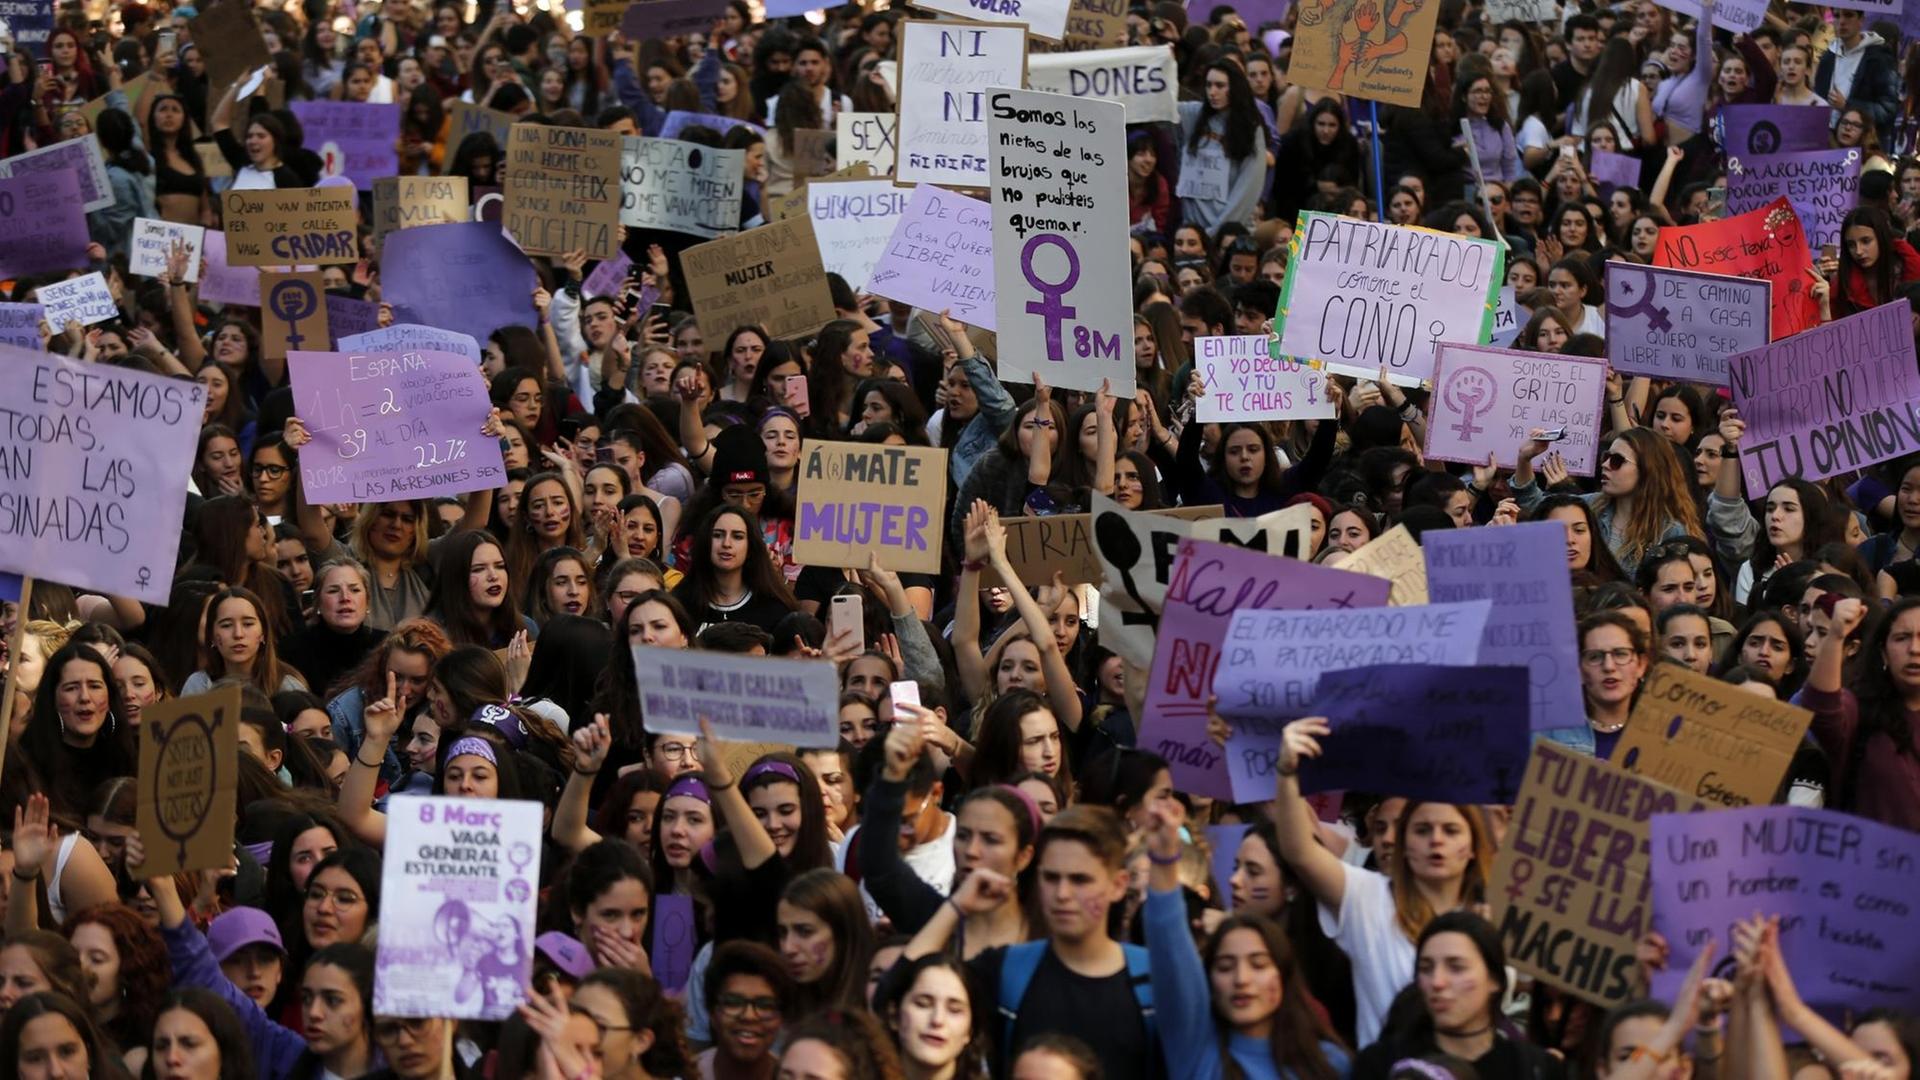 Frauen in Barcelona kritisieren auf einer Demonstration sexuelle Gewalt und Benachteiligung.